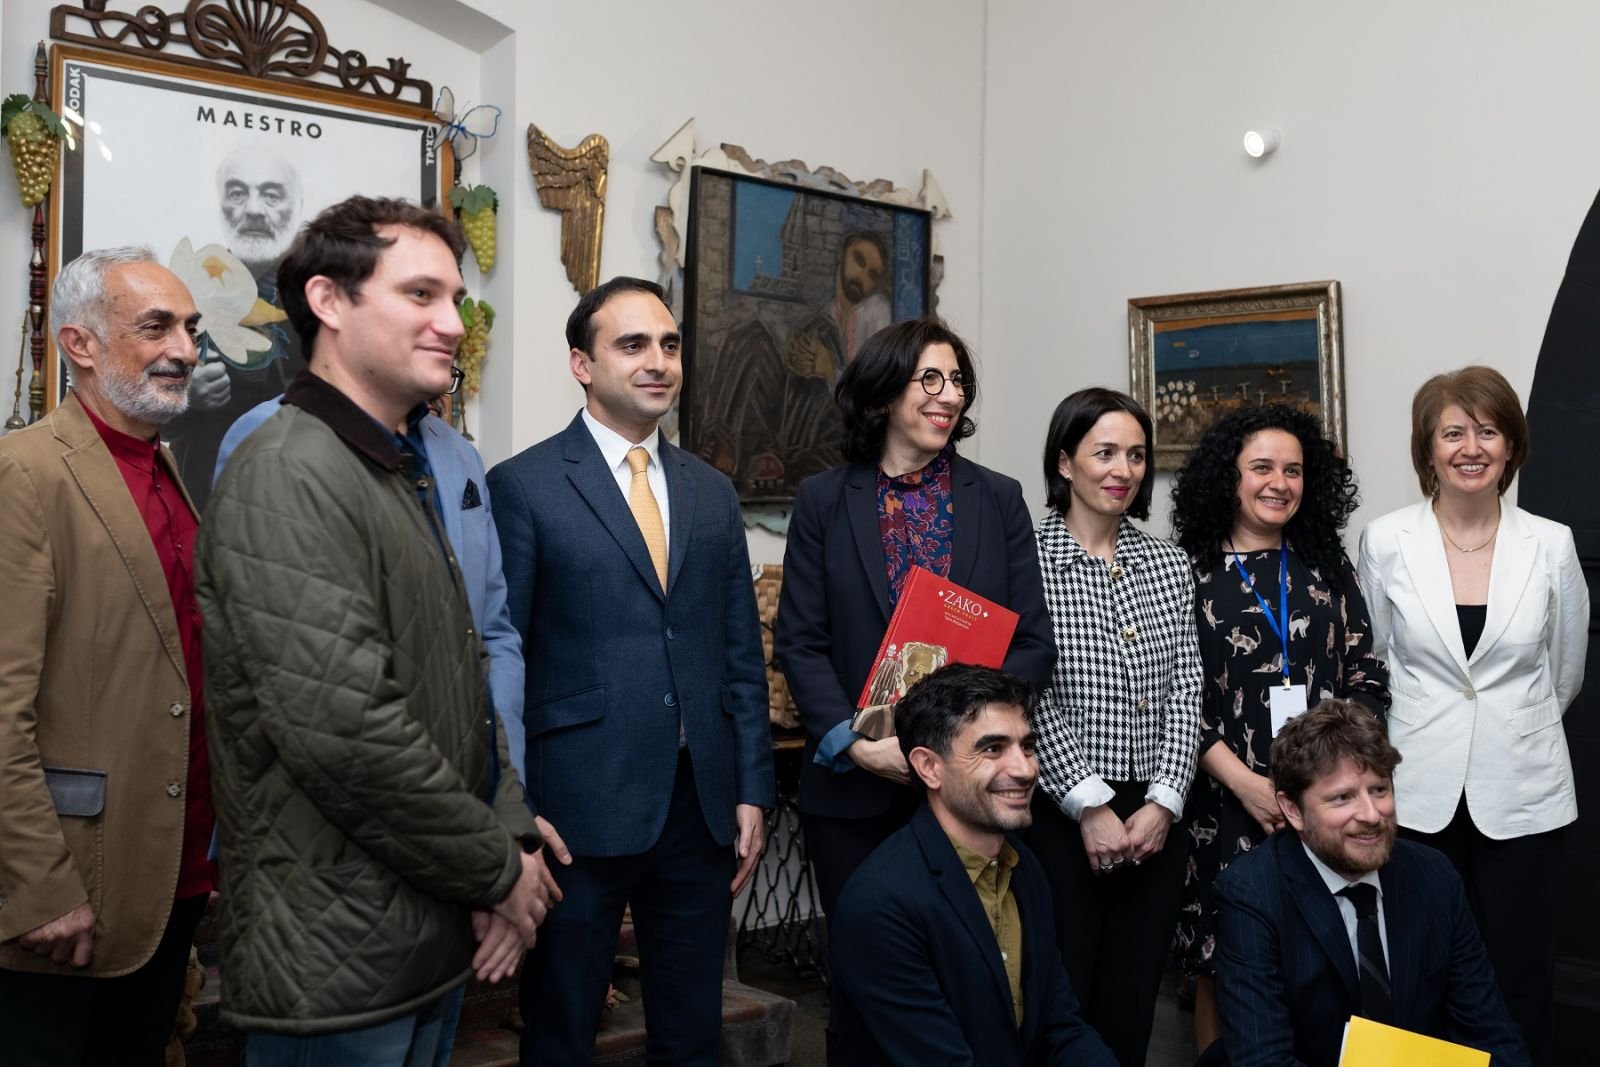 Ֆրանսիայի պատվիրակությունը Փարաջանովի թանգարանում ներկա է եղել Zako անիմացիոն նախագծի շնորհանդեսին